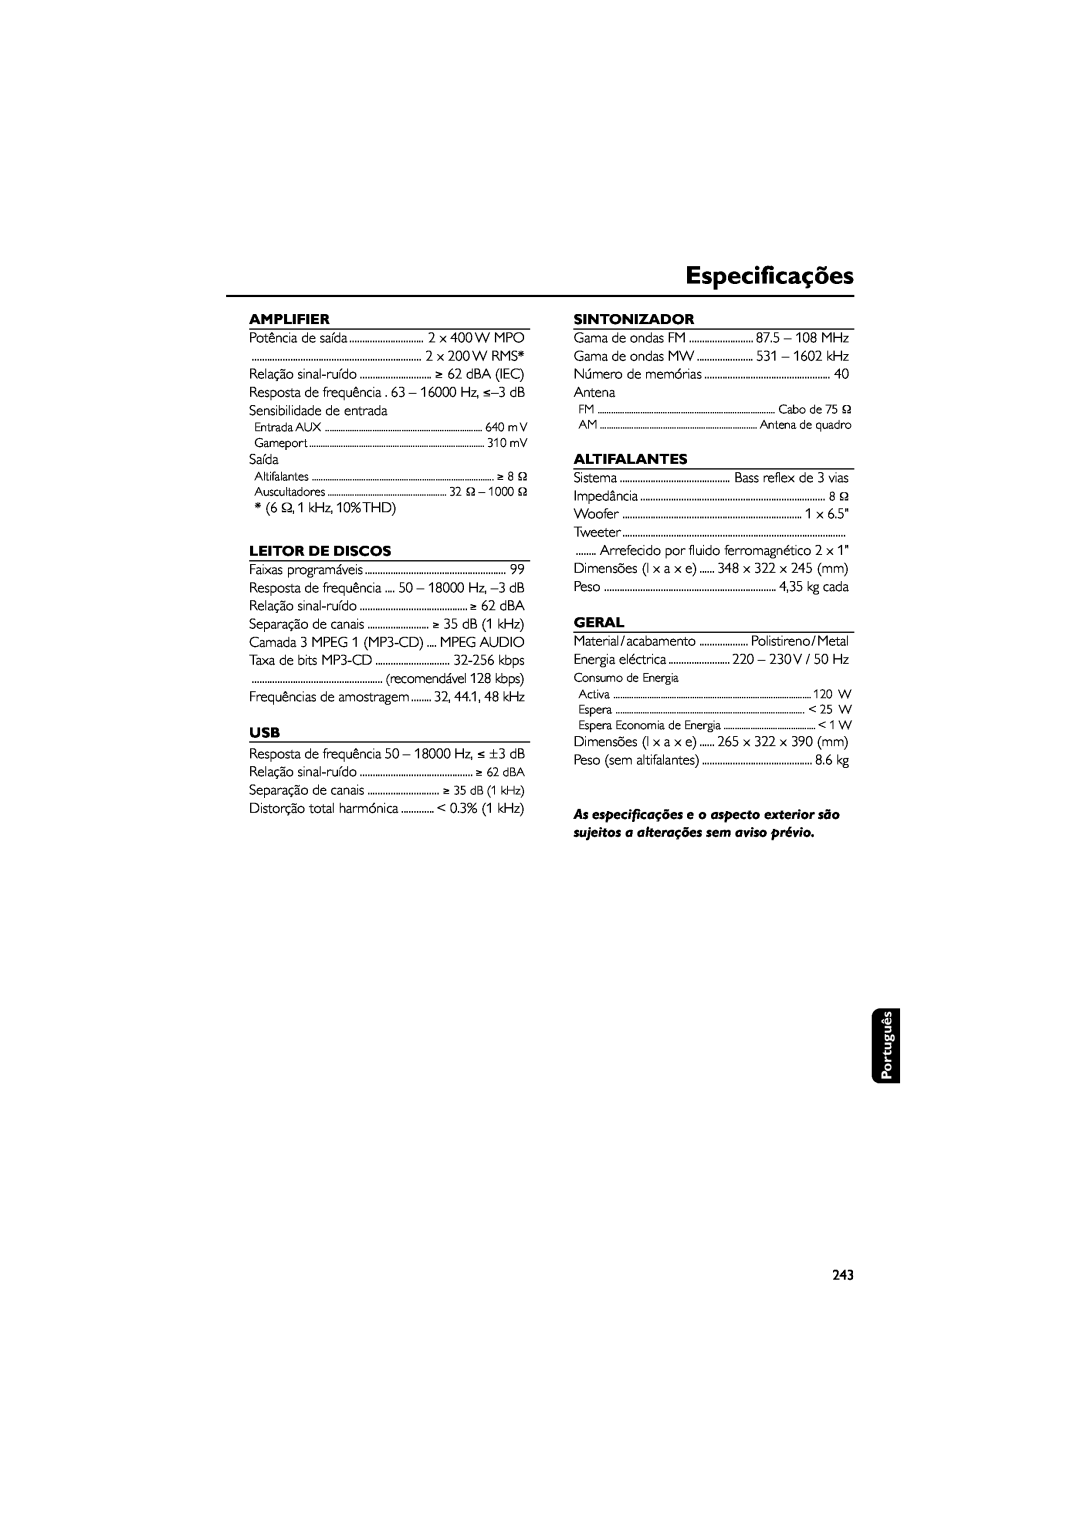 Philips FWM589 manual Especificações, Amplifier, Leitor De Discos, Sintonizador, Altifalantes, Geral, Português 